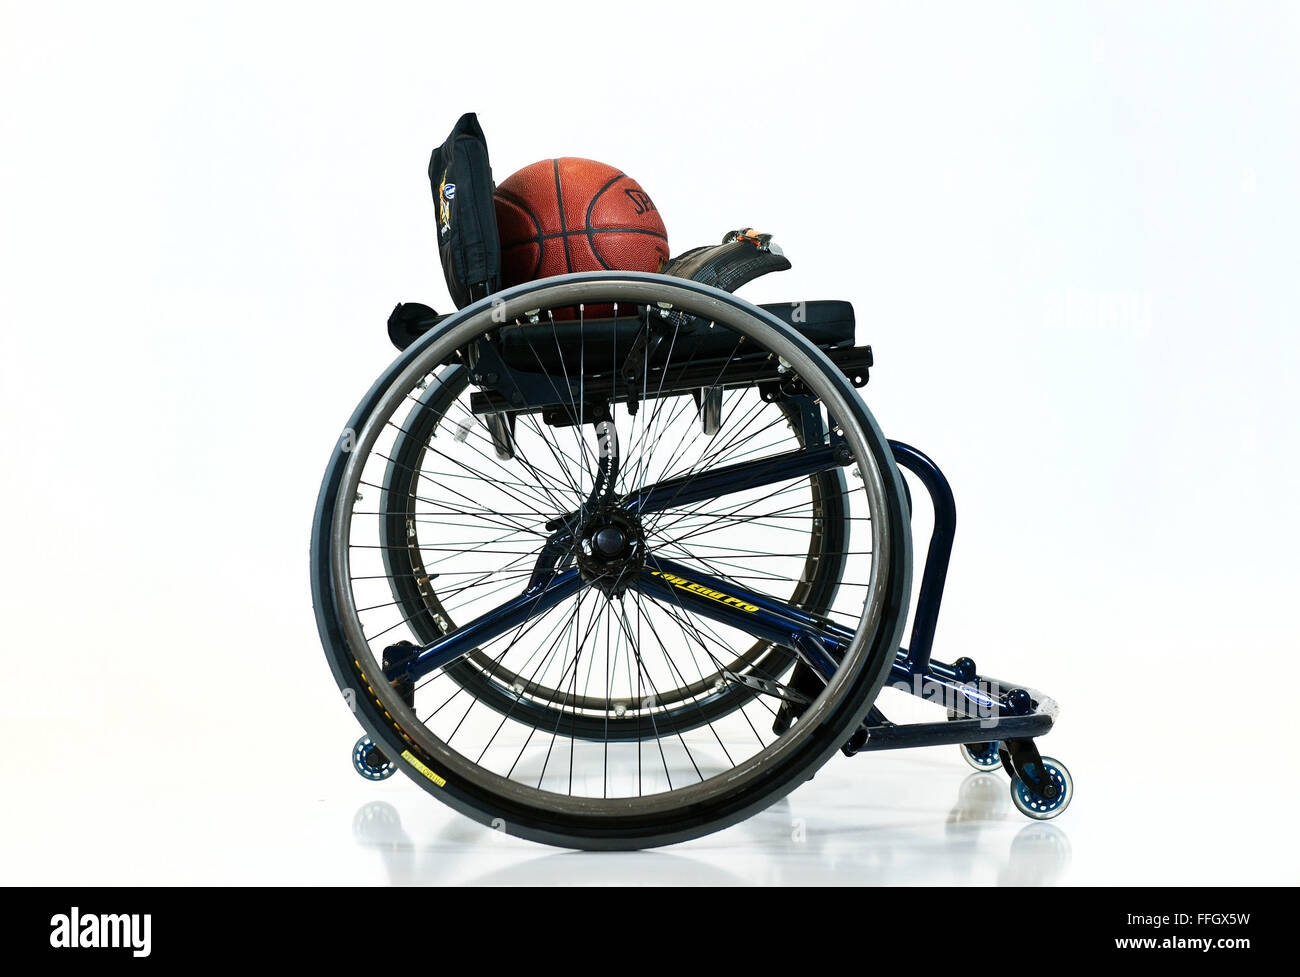 Krieger-Spiele-Rollstuhl-Basketball-Spiele folgen die gleichen Regeln wie der NCAA mit ein paar Modifikationen um das Spiel Rollstuhl unterzubringen. Jede Mannschaft ist verpflichtet, mindestens zwei Spieler mit unteren Extremität Beeinträchtigungen auf dem Platz zu allen Zeiten haben. Stockfoto